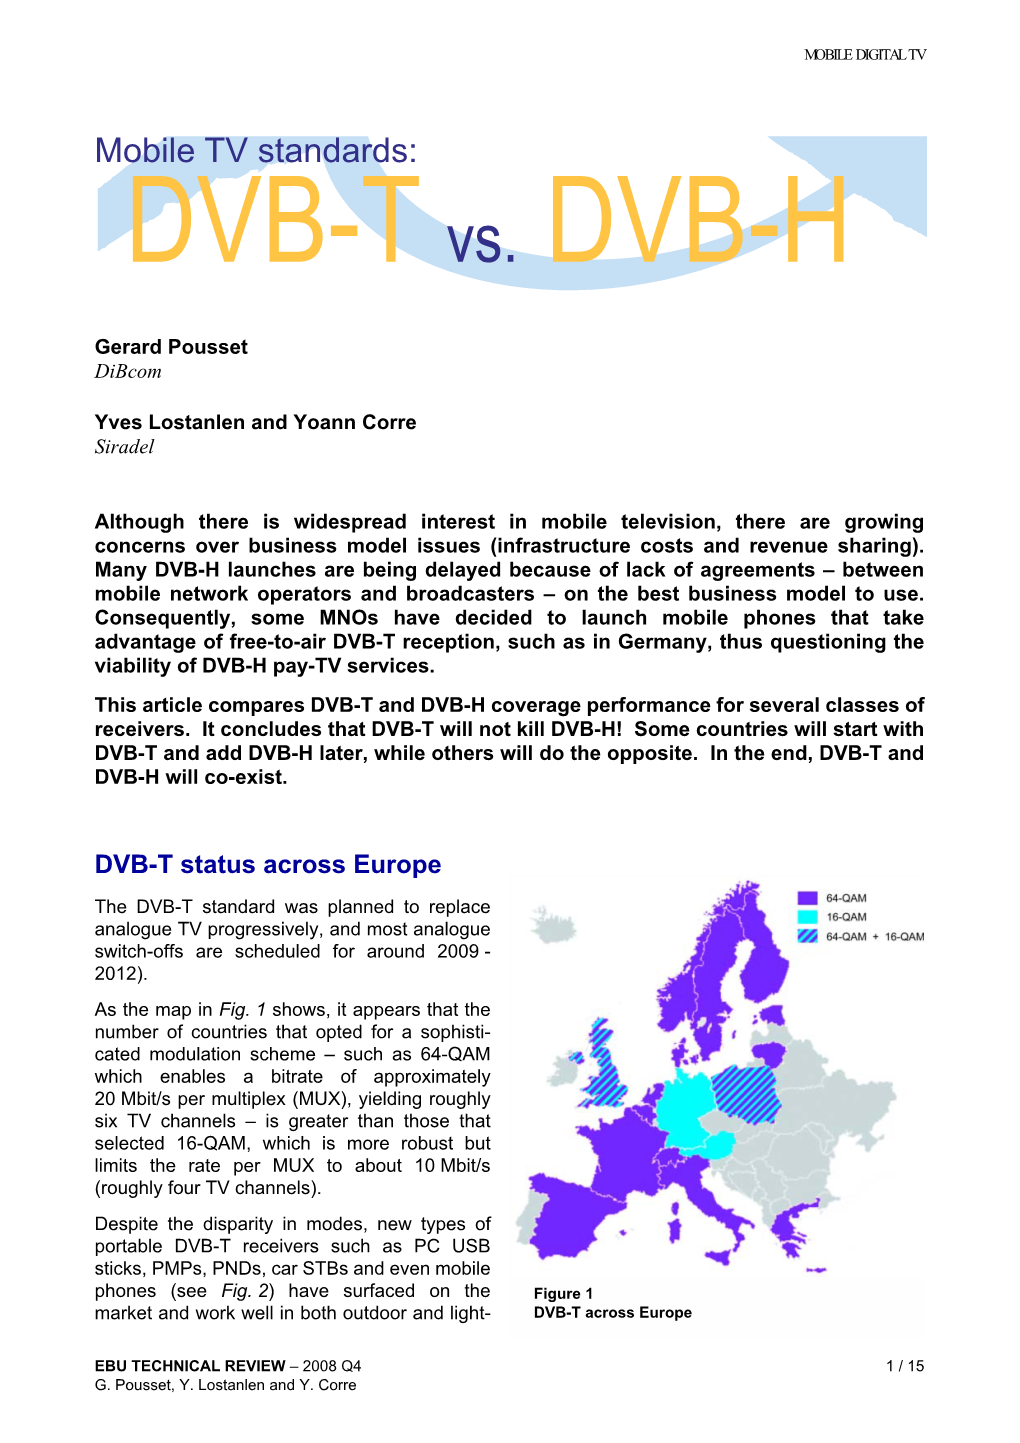 DVB-T Vs. DVB-H